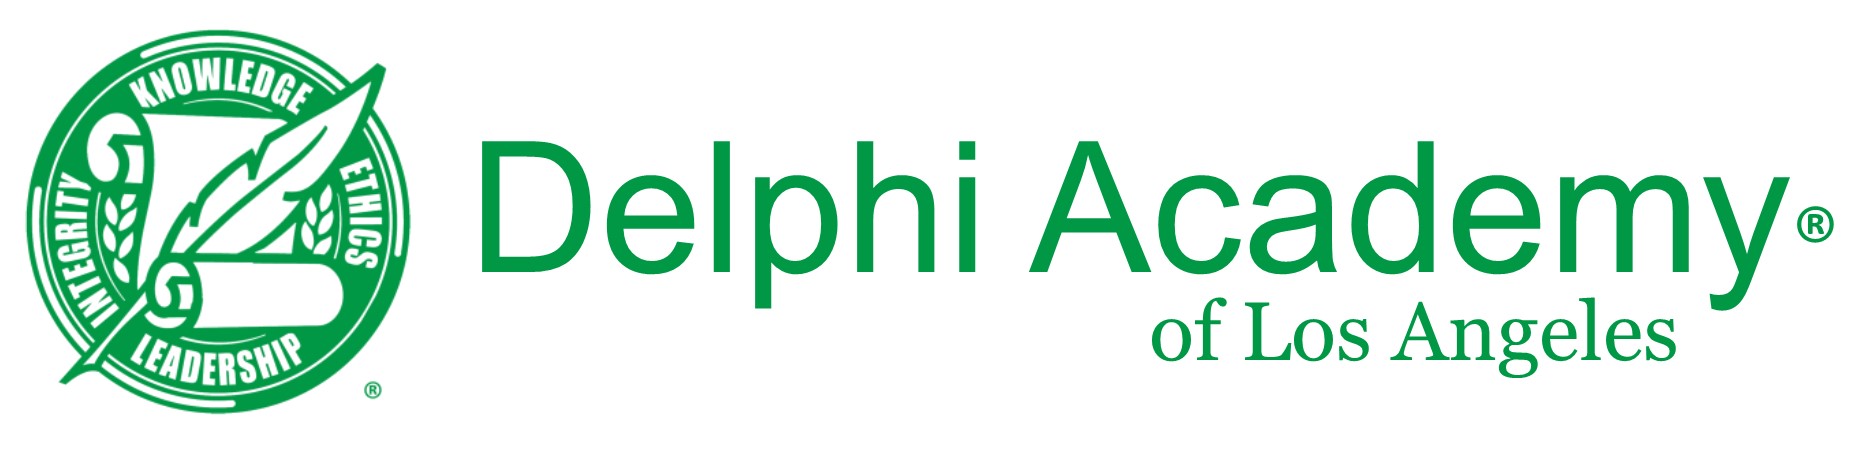 Delphi Academy of Los Angeles